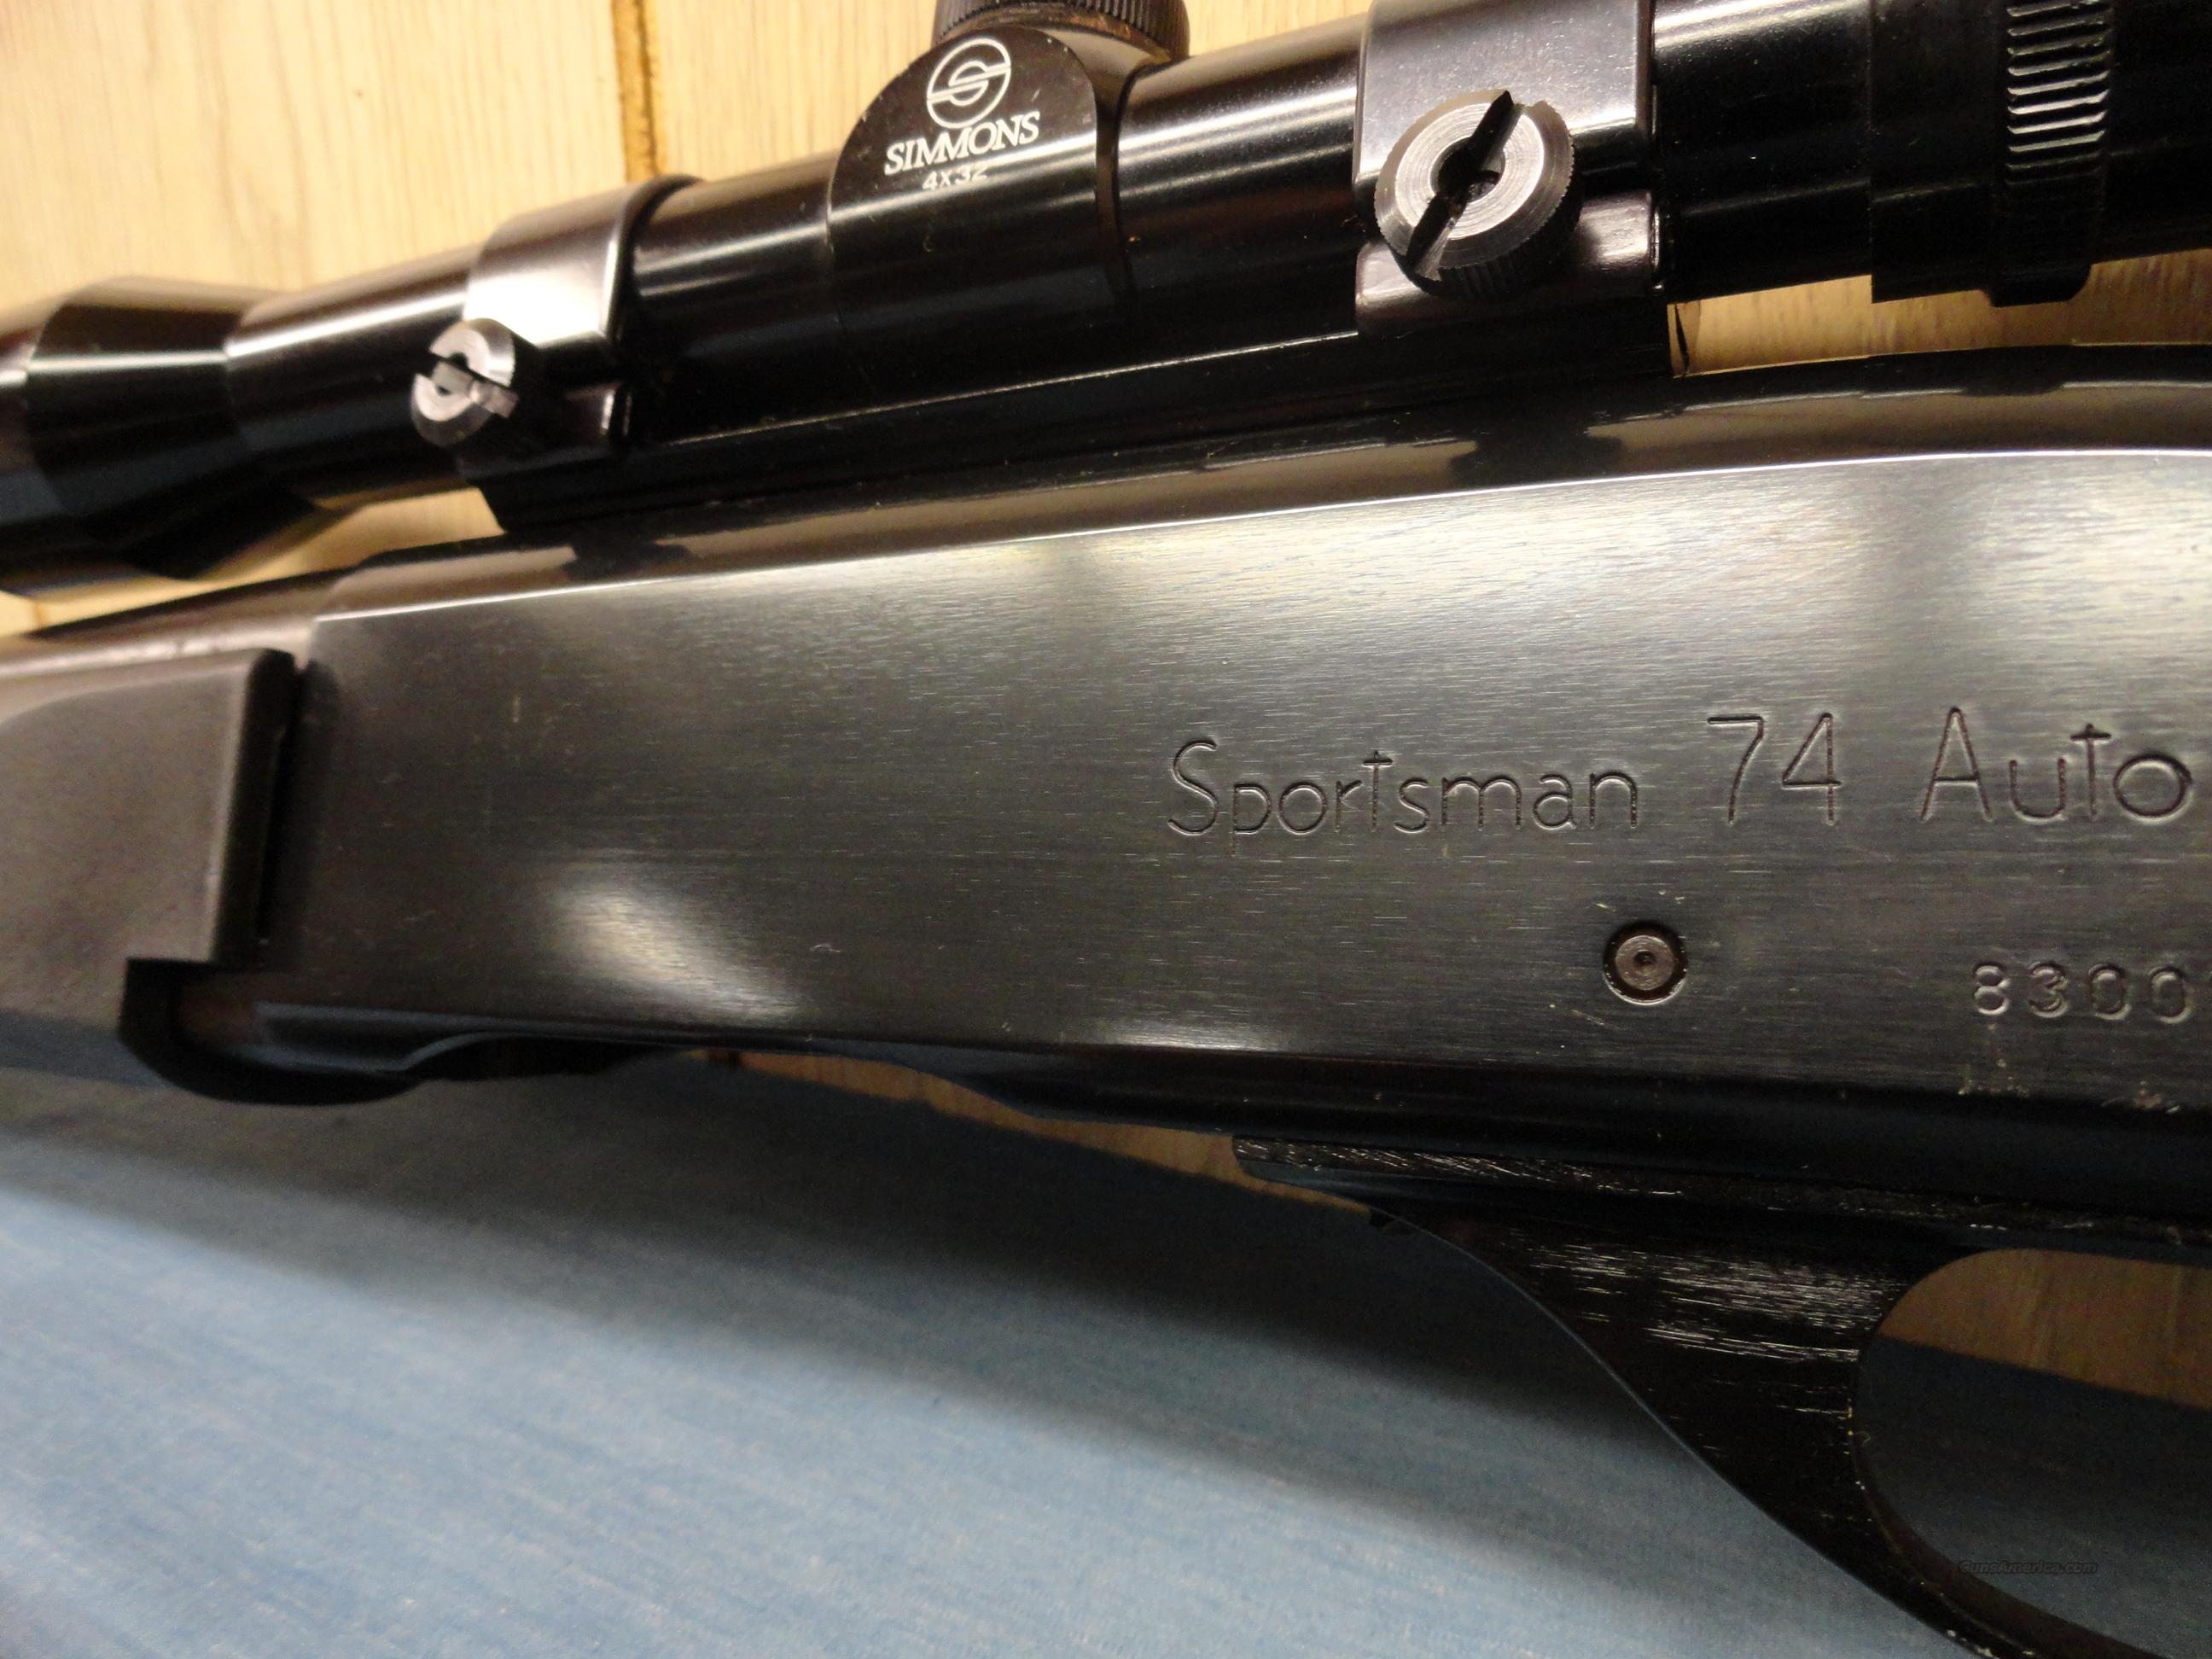 schematic remington sportsman 78